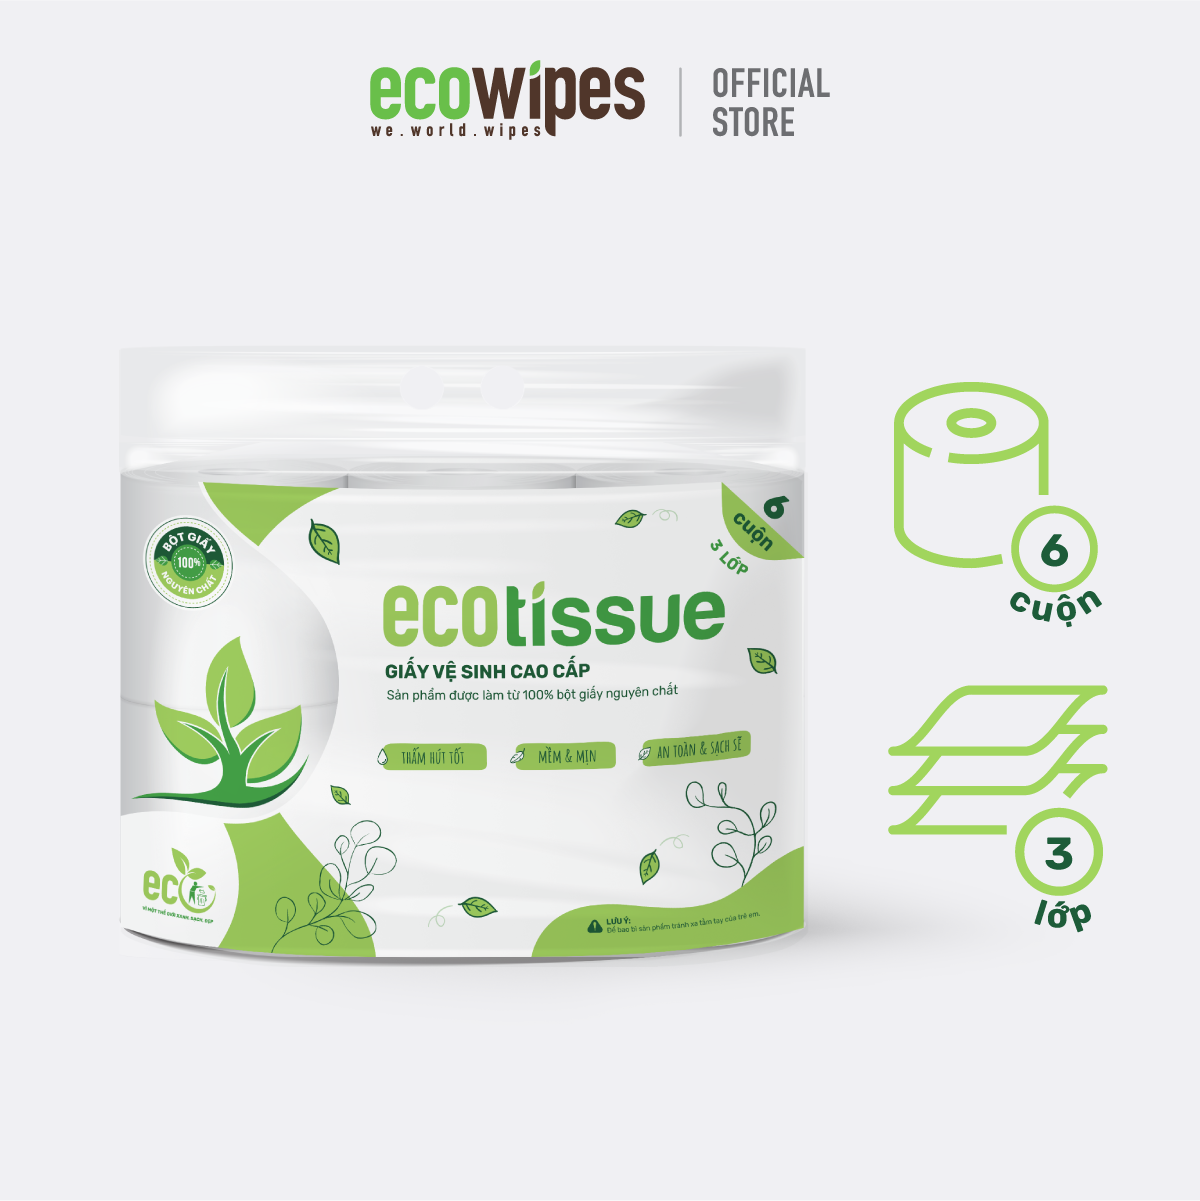 Giấy vệ sinh giấy cuộn cao cấp Ecotissue 3 lớp lốc 6 cuộn có lõi cao cấp mềm dai tự nhiên